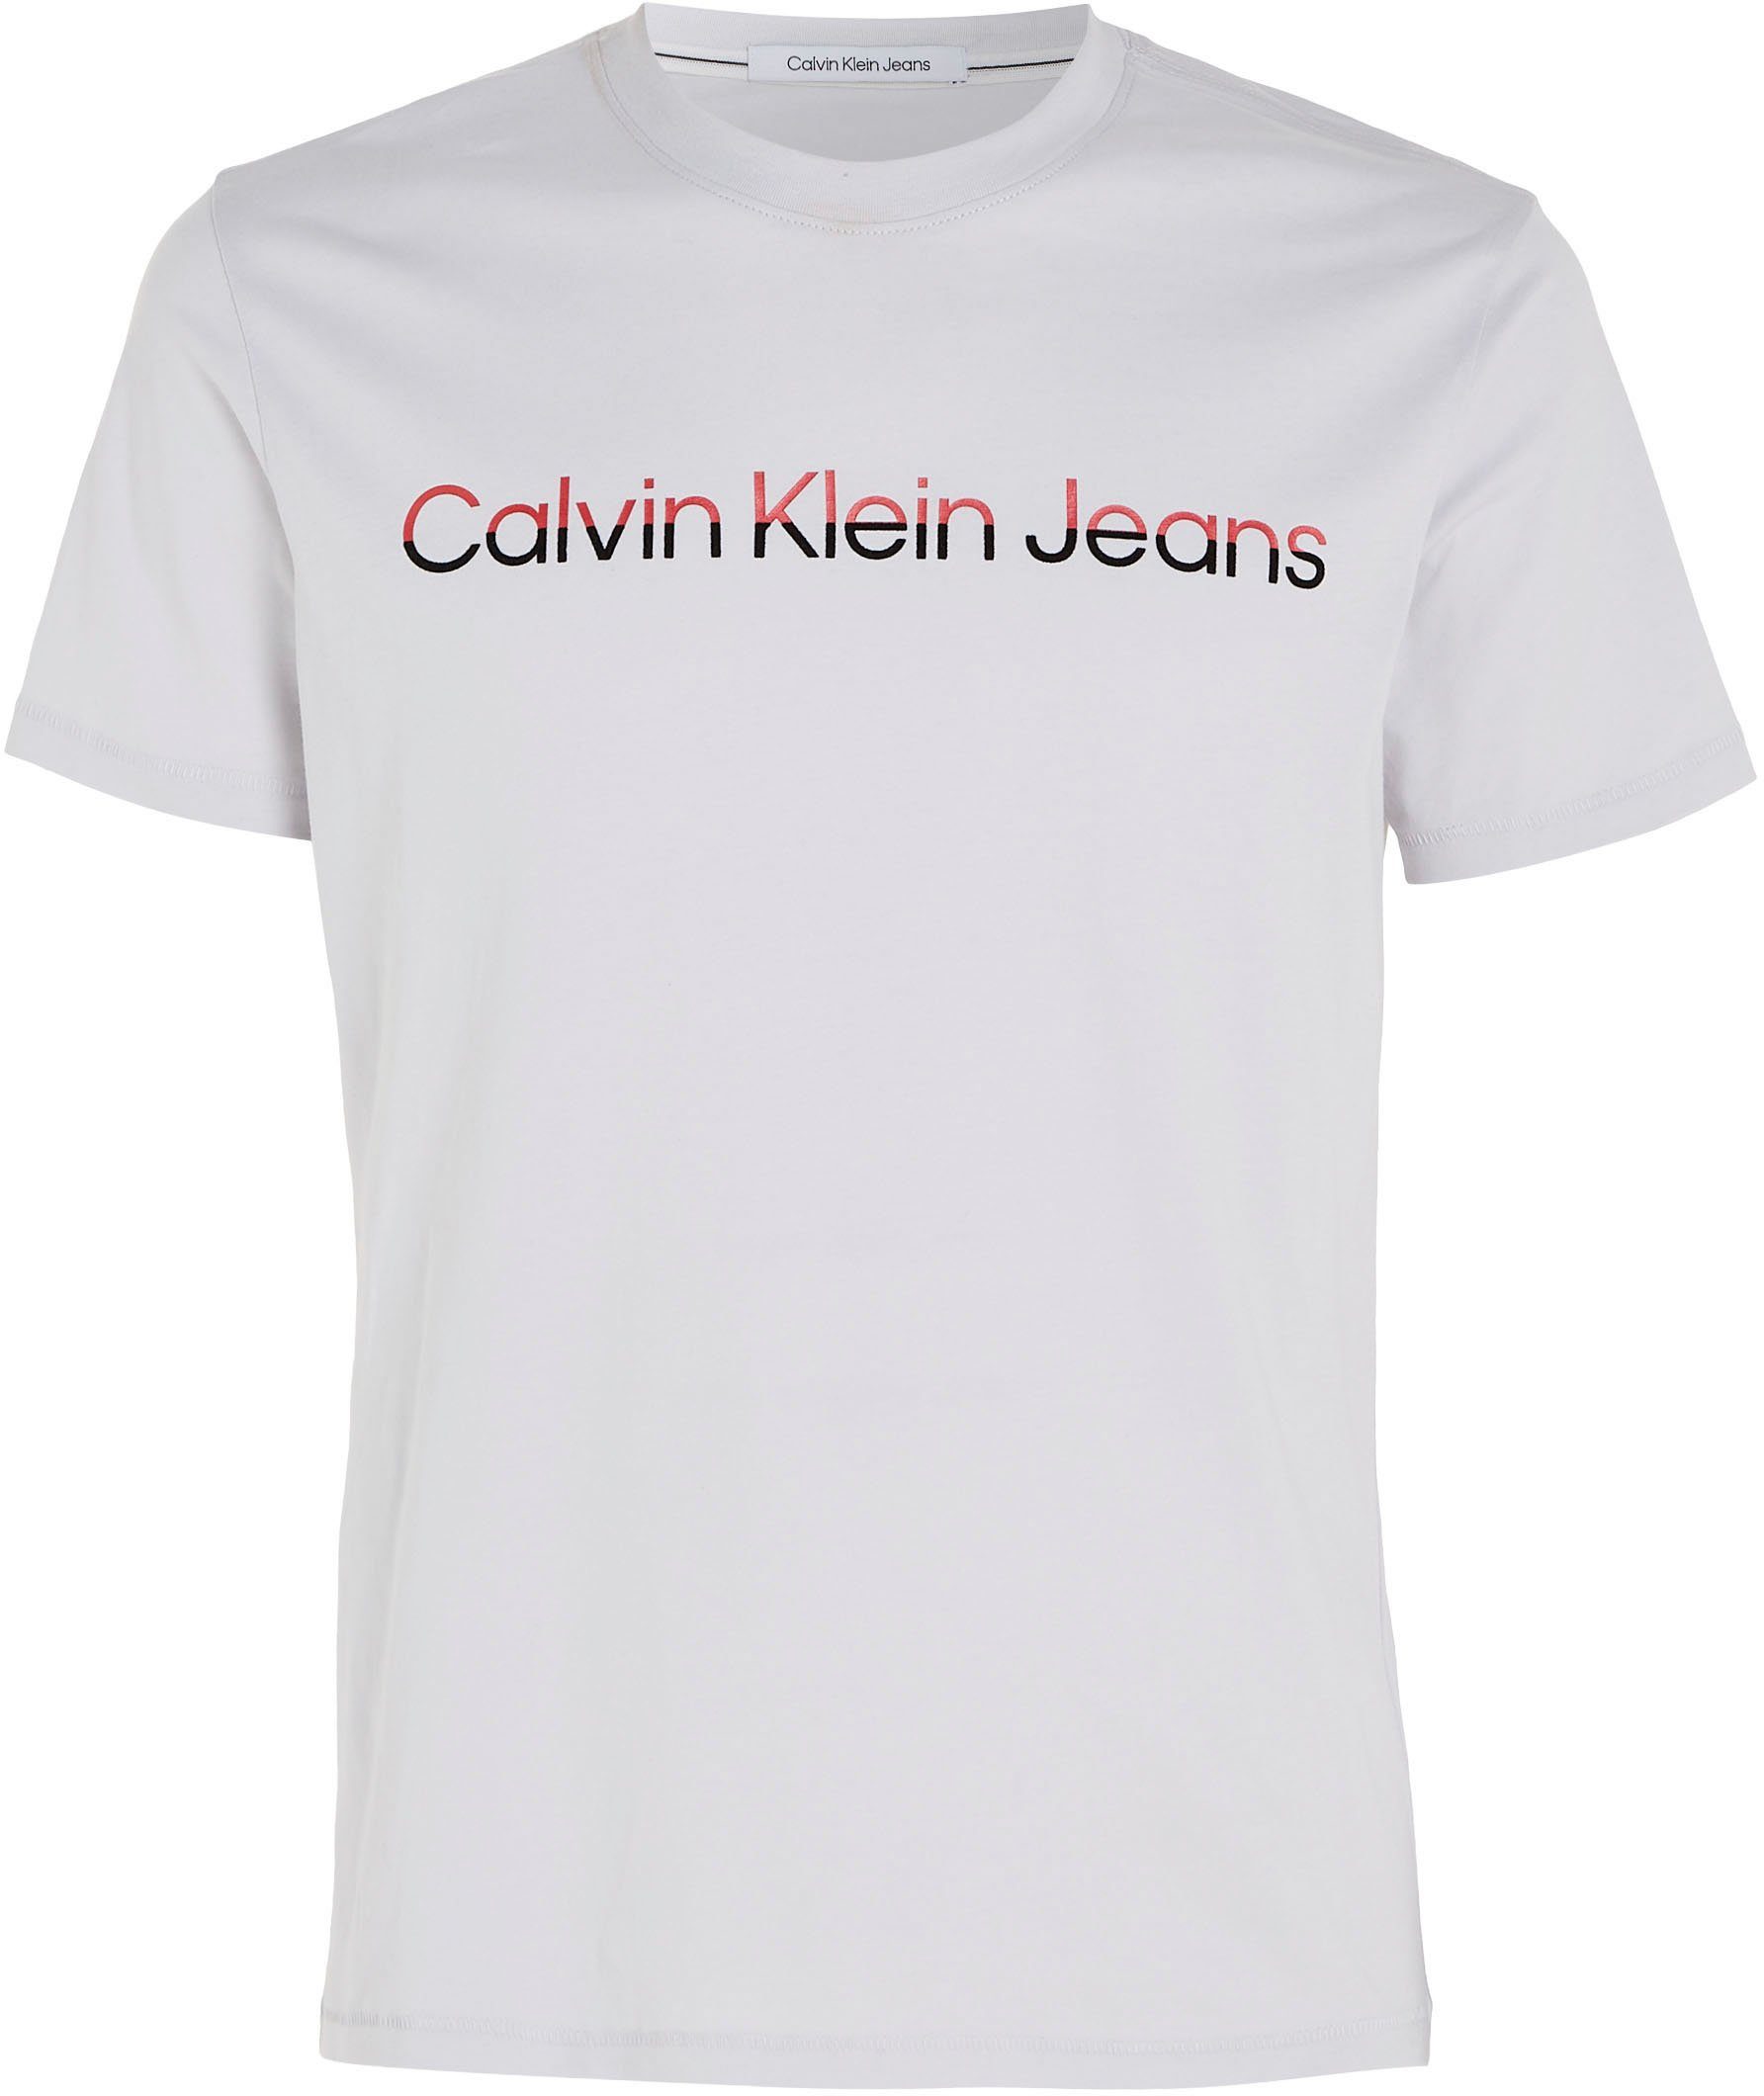 Calvin Klein Jeans T-Shirt Shirt MIXED INSTITUTIONA mit Calvin Klein Logoschriftzug grau